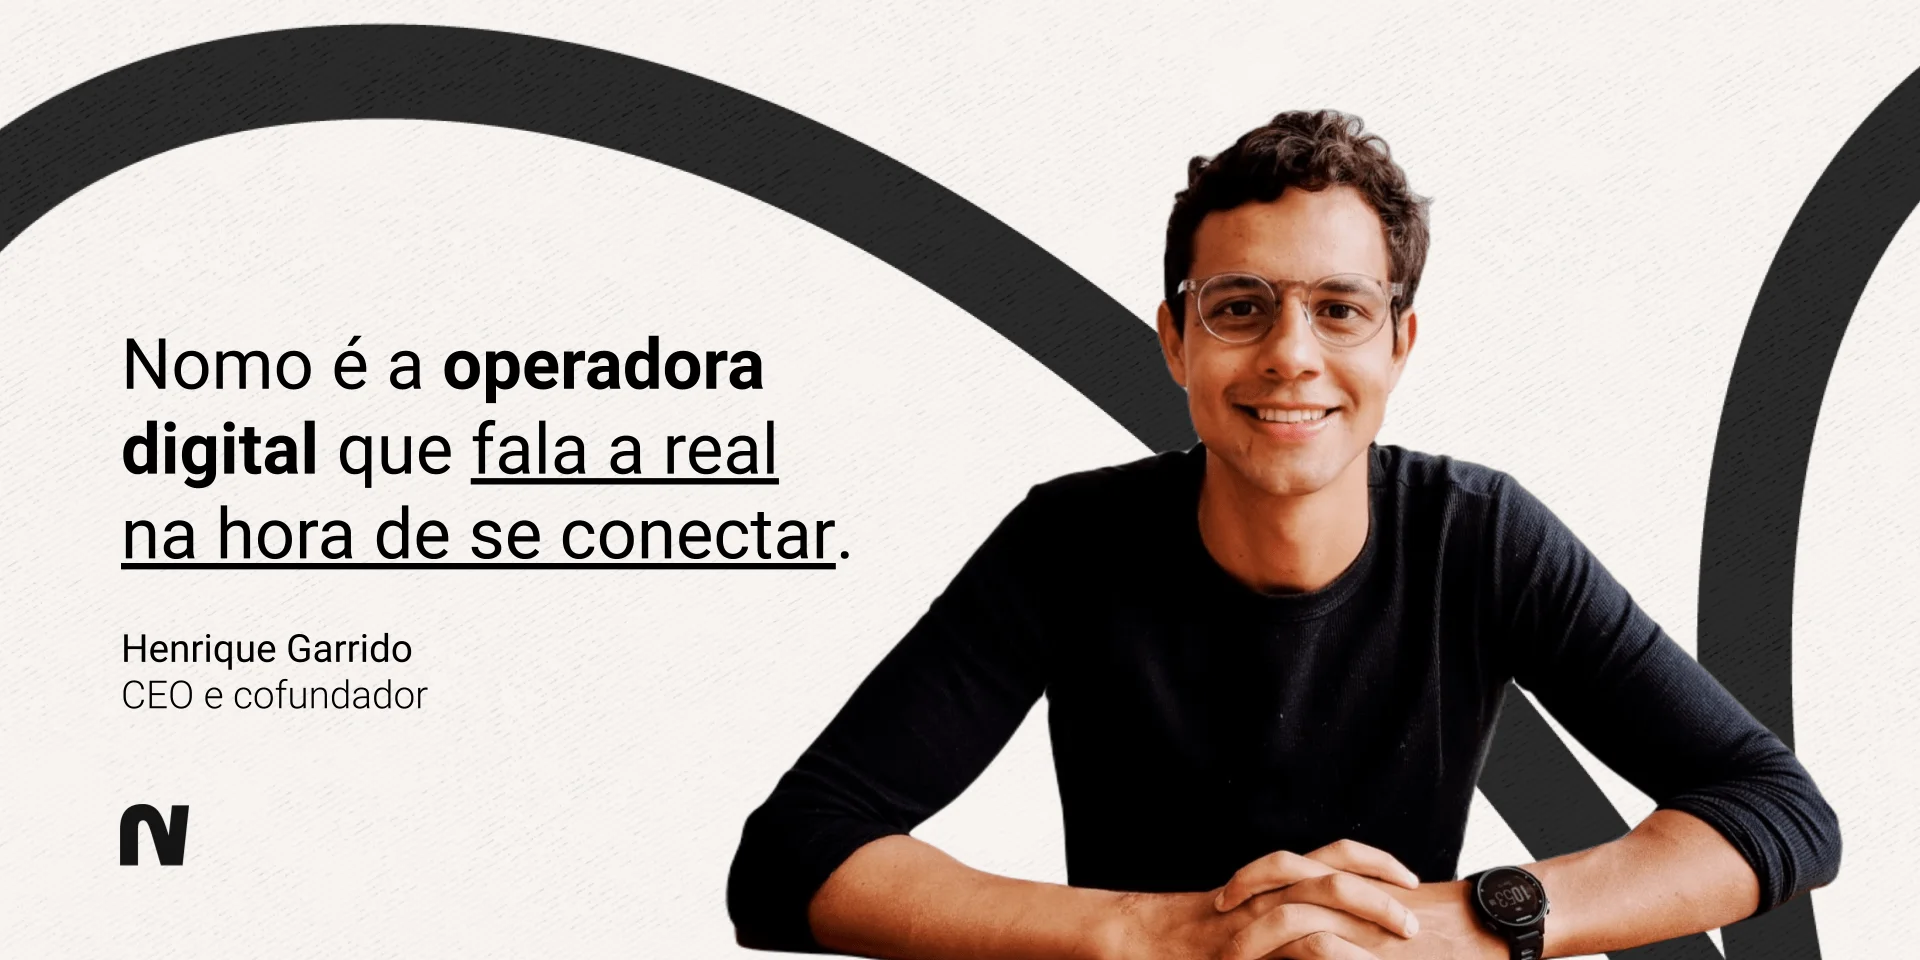 Henrique Garrido, CEO e cofundador da Nomo. Lê-se “Nomo é a operadora digital que fala a real na hora de se conectar”.